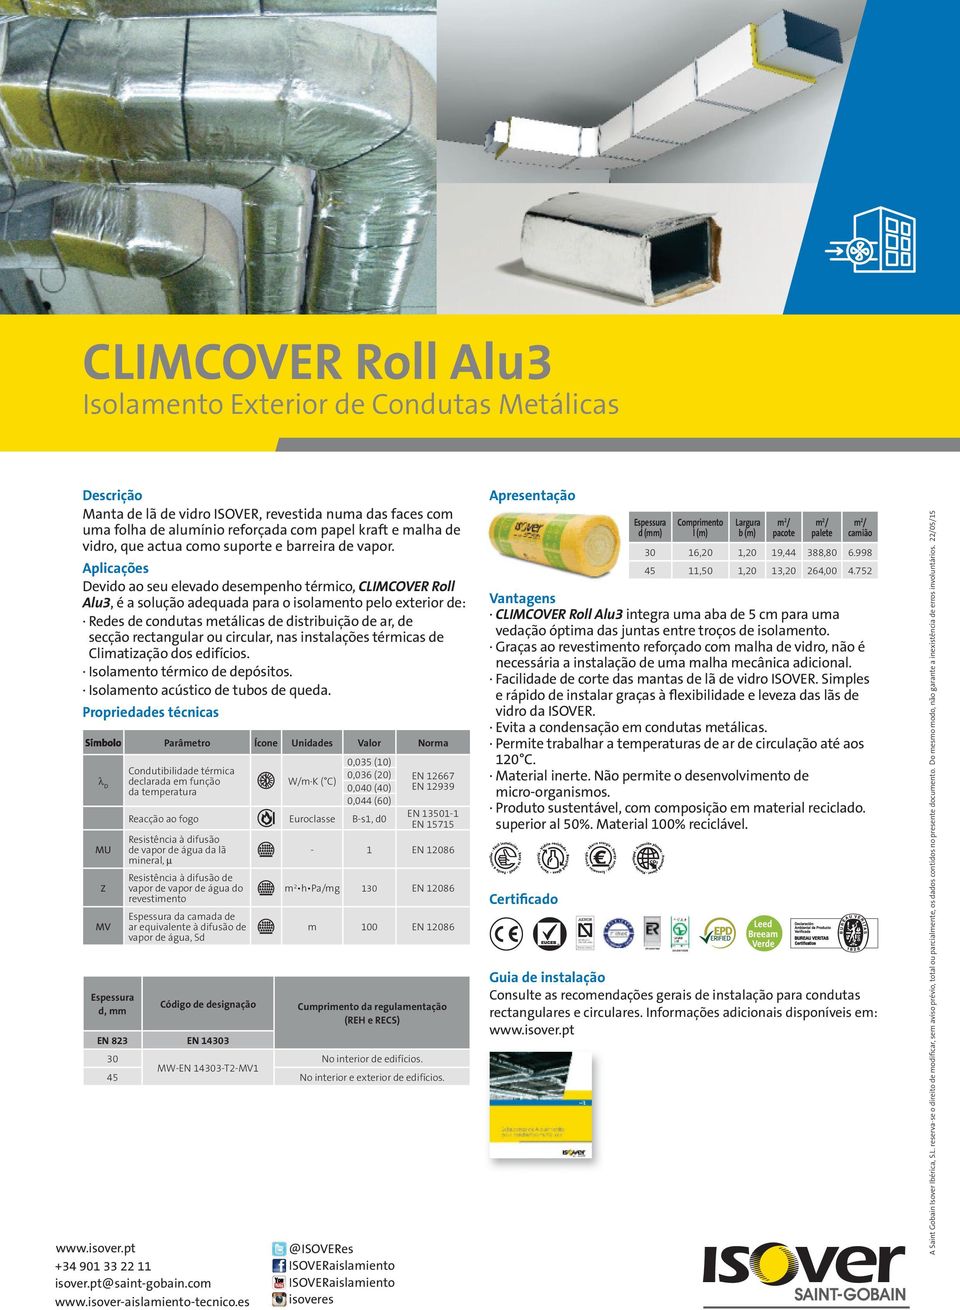 Devido ao seu elevado desempenho térmico, CLIMCOVER Roll Alu3, é a solução adequada para o isolamento pelo exterior de: Redes de condutas metálicas de distribuição de ar, de secção rectangular ou